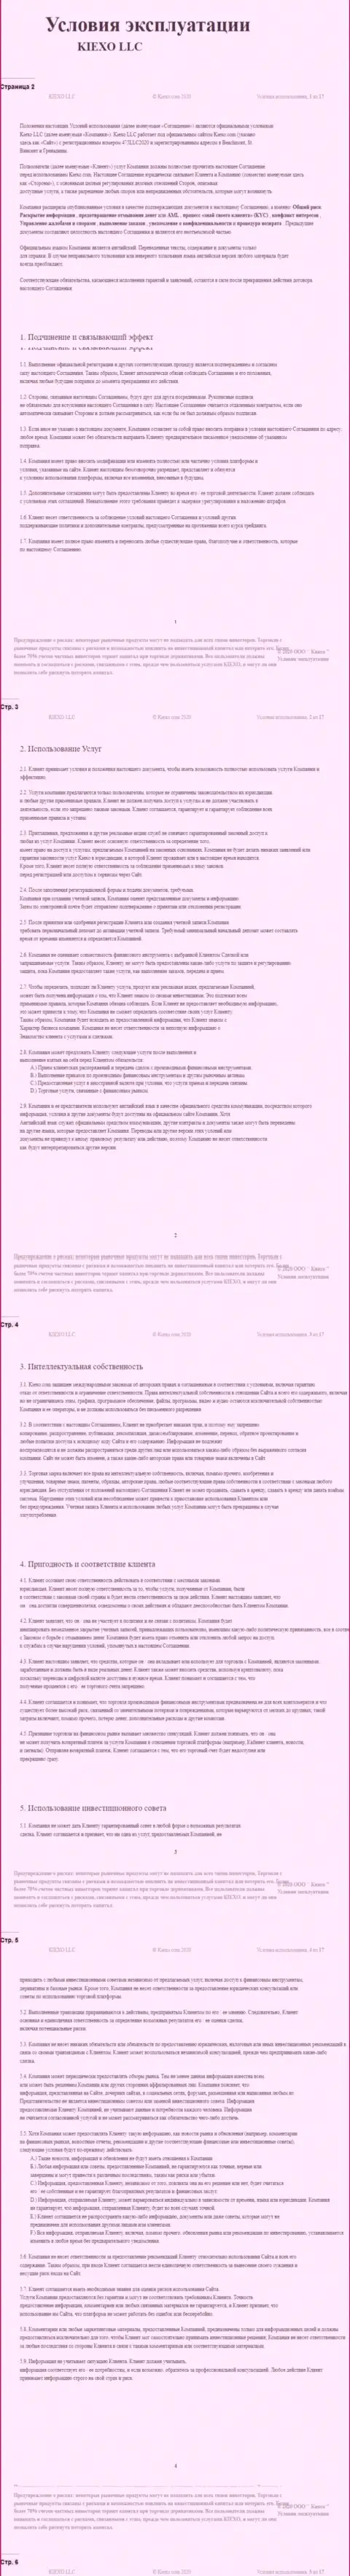 Клиентское соглашение ФОРЕКС дилинговой компании Киексо (часть 1)